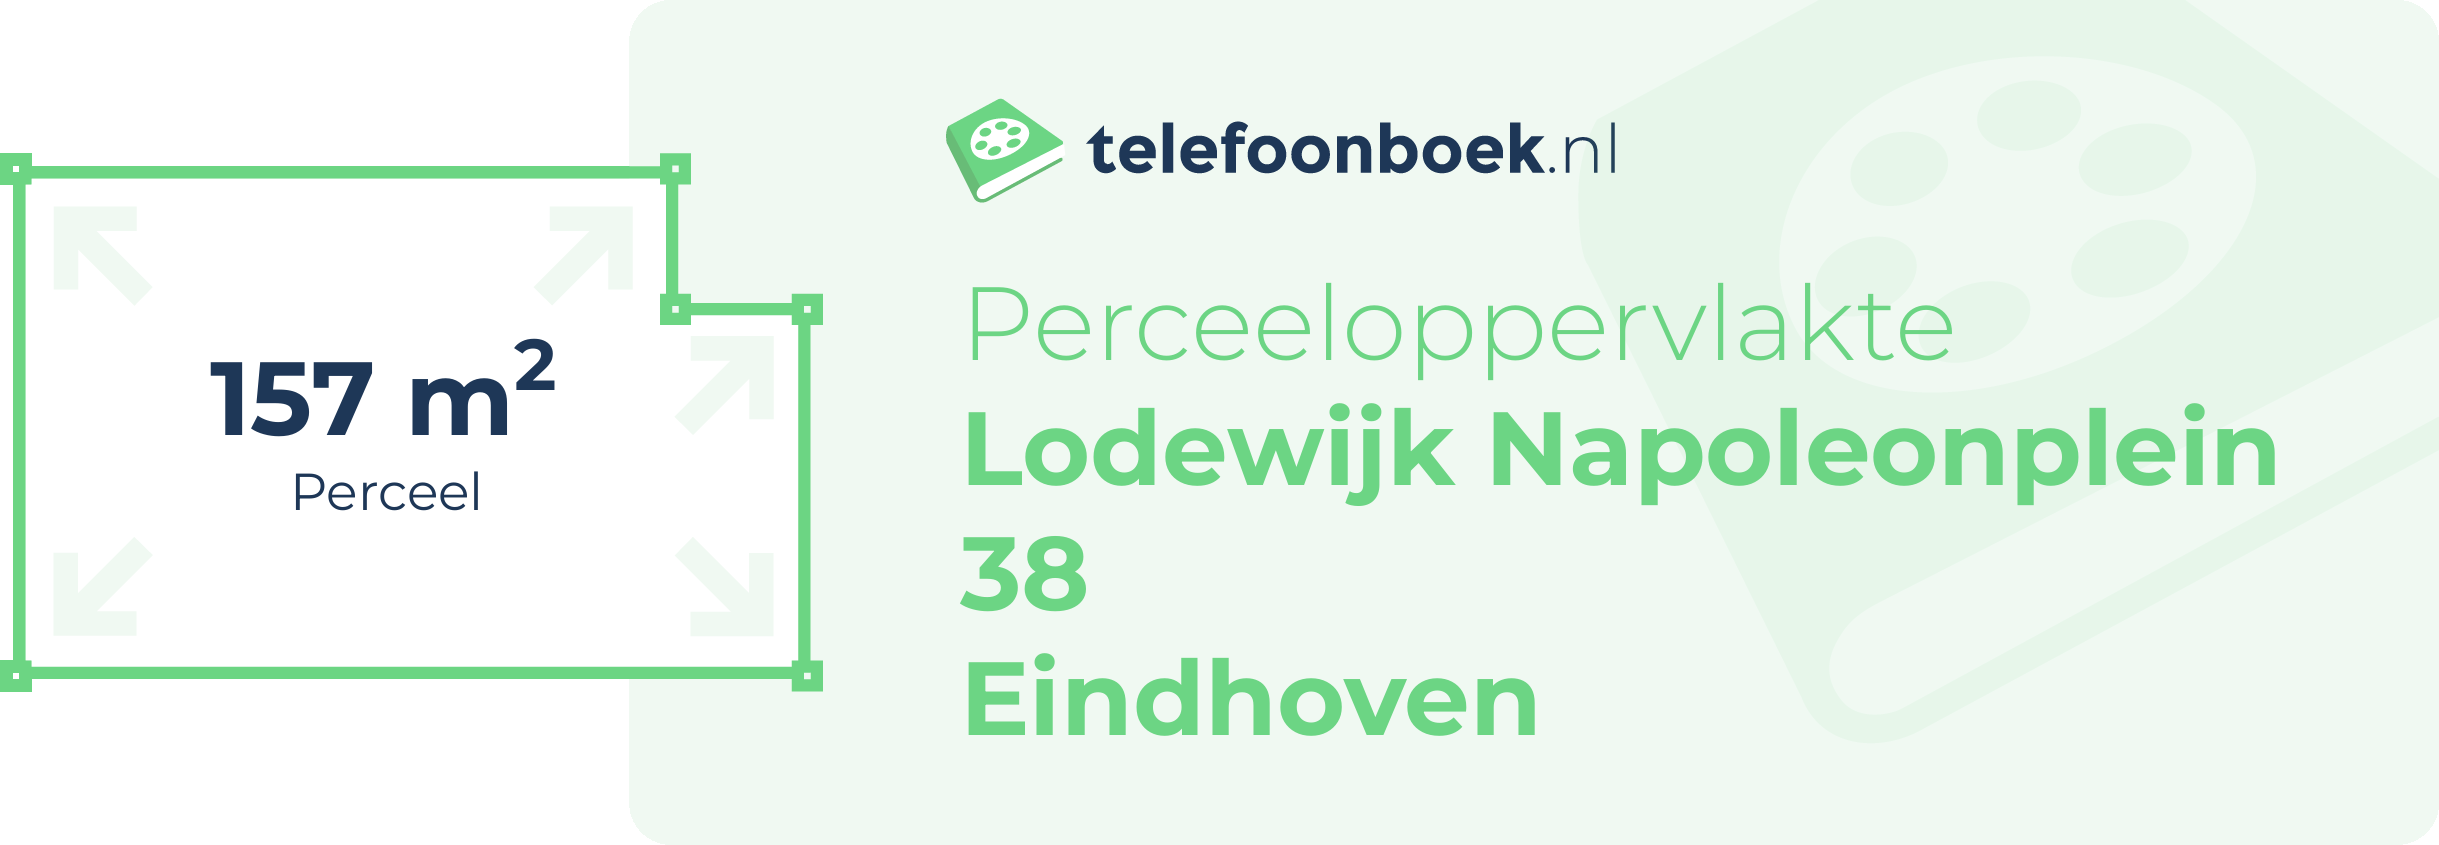 Perceeloppervlakte Lodewijk Napoleonplein 38 Eindhoven